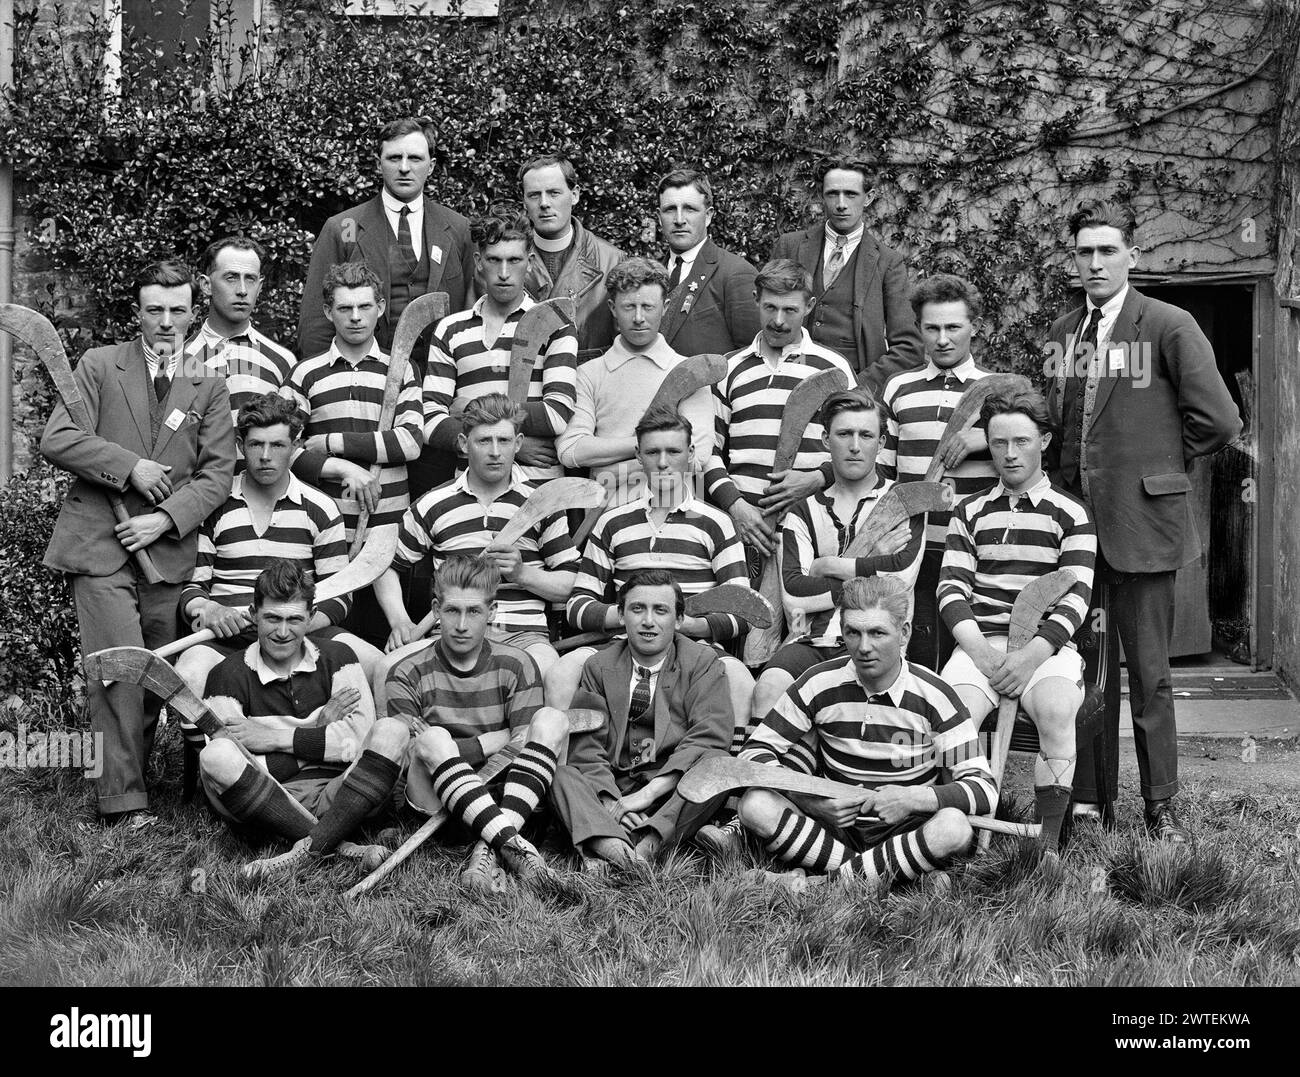 Photographie irlandaise vintage : photo d'équipe de l'équipe Clare Senior Hurling, probablement vers les années 1925 Banque D'Images